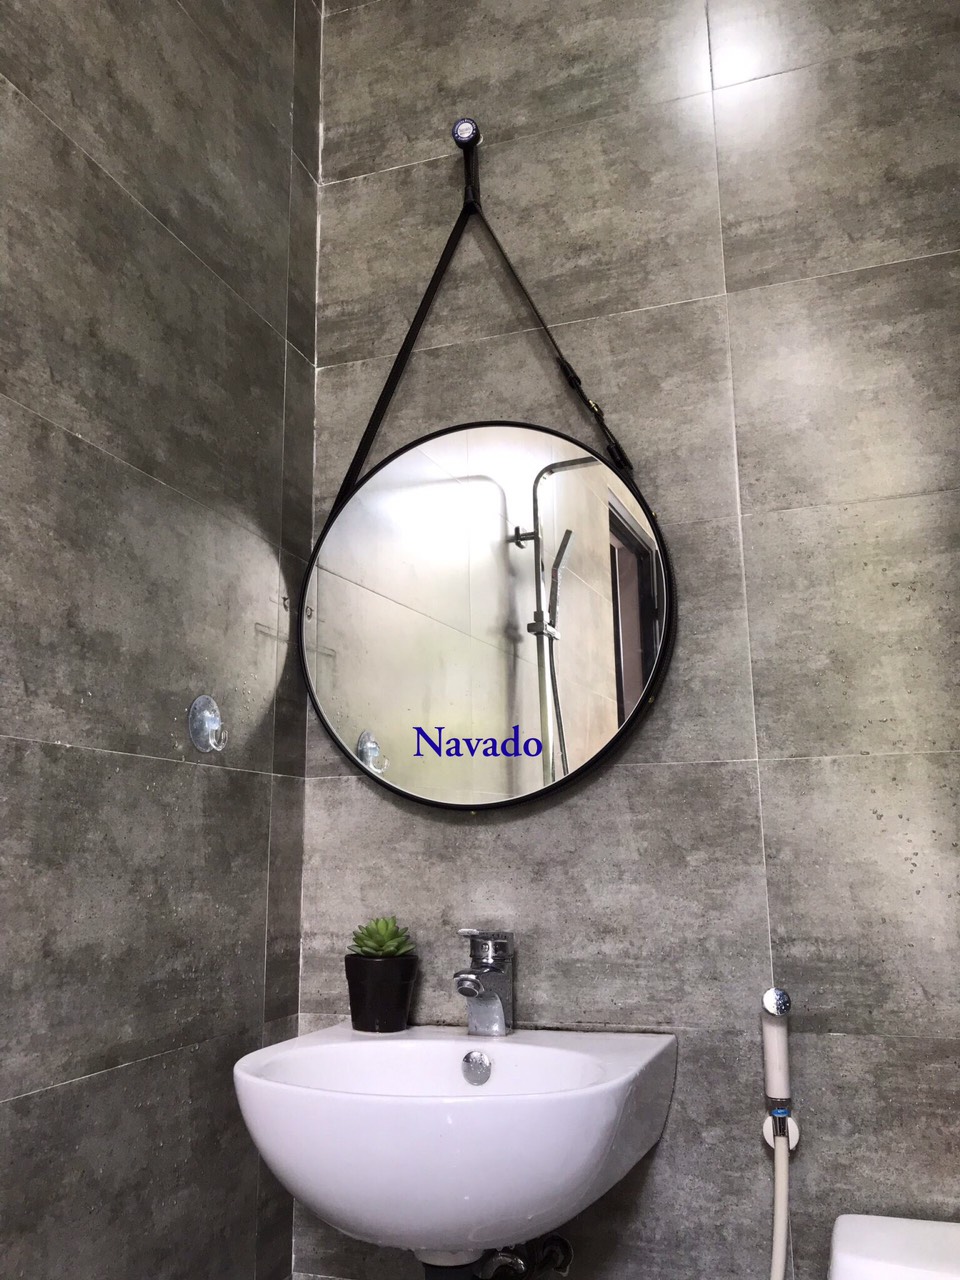 Cùng trang trí phòng tắm của bạn trở nên độc đáo hơn với gương treo phòng tắm độc đáo. Thiết kế đơn giản nhưng tinh tế sẽ tạo ra một không gian tắm tiện nghi và thú vị. Hãy thử xem tấm hình liên quan để tìm thấy sức hút từ những chi tiết nhỏ trong gương này.